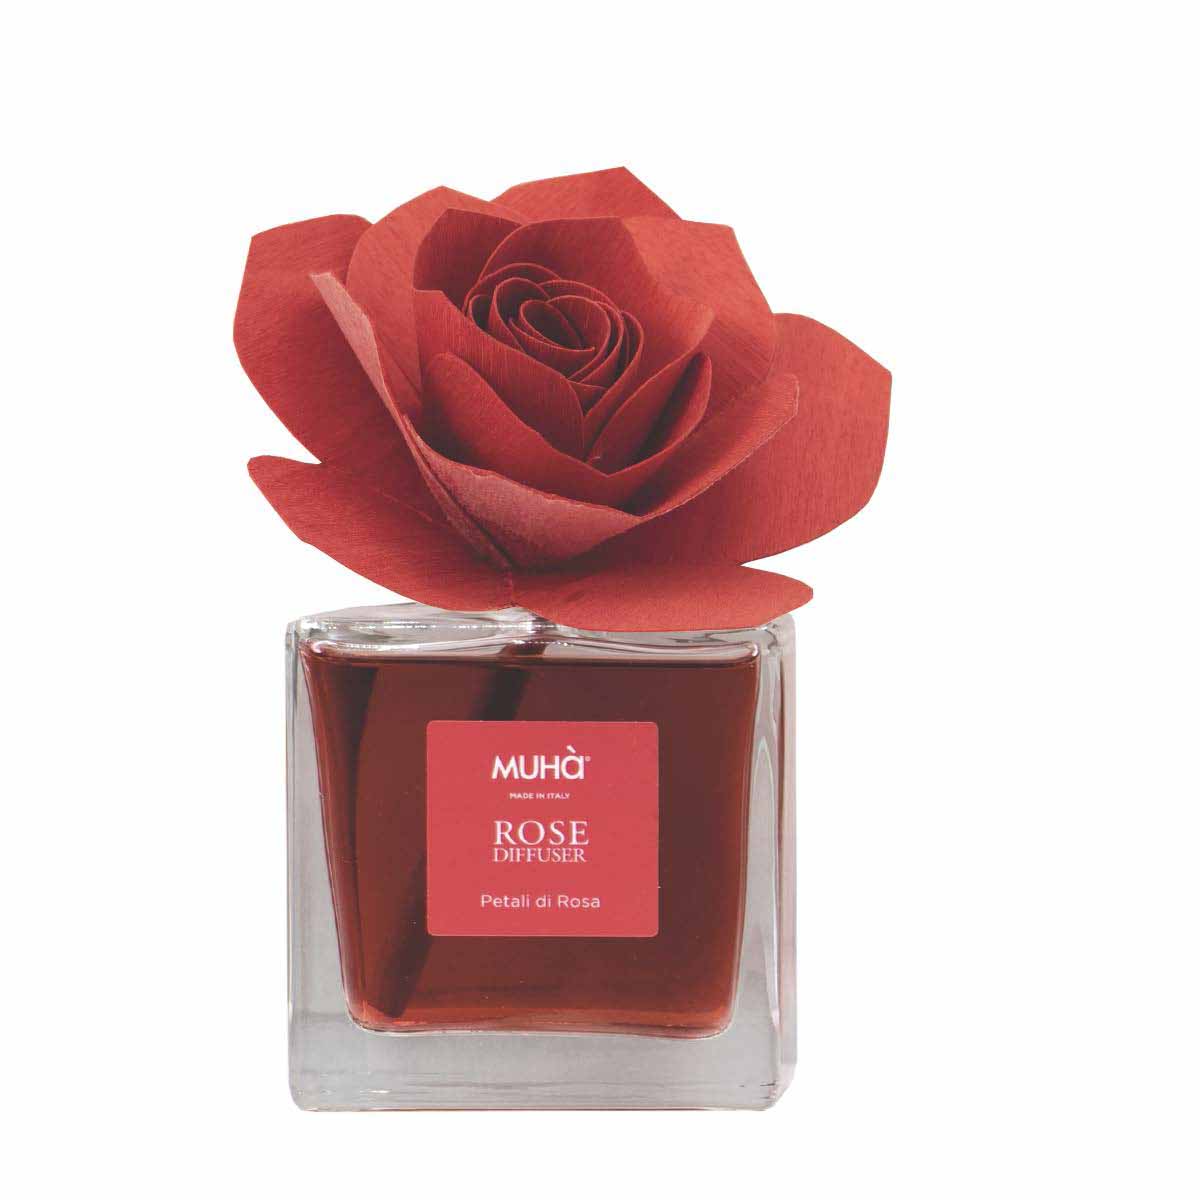 Muha Flower Diffuser - Petali di Rosa 100 ml, Promozioni nei negozi